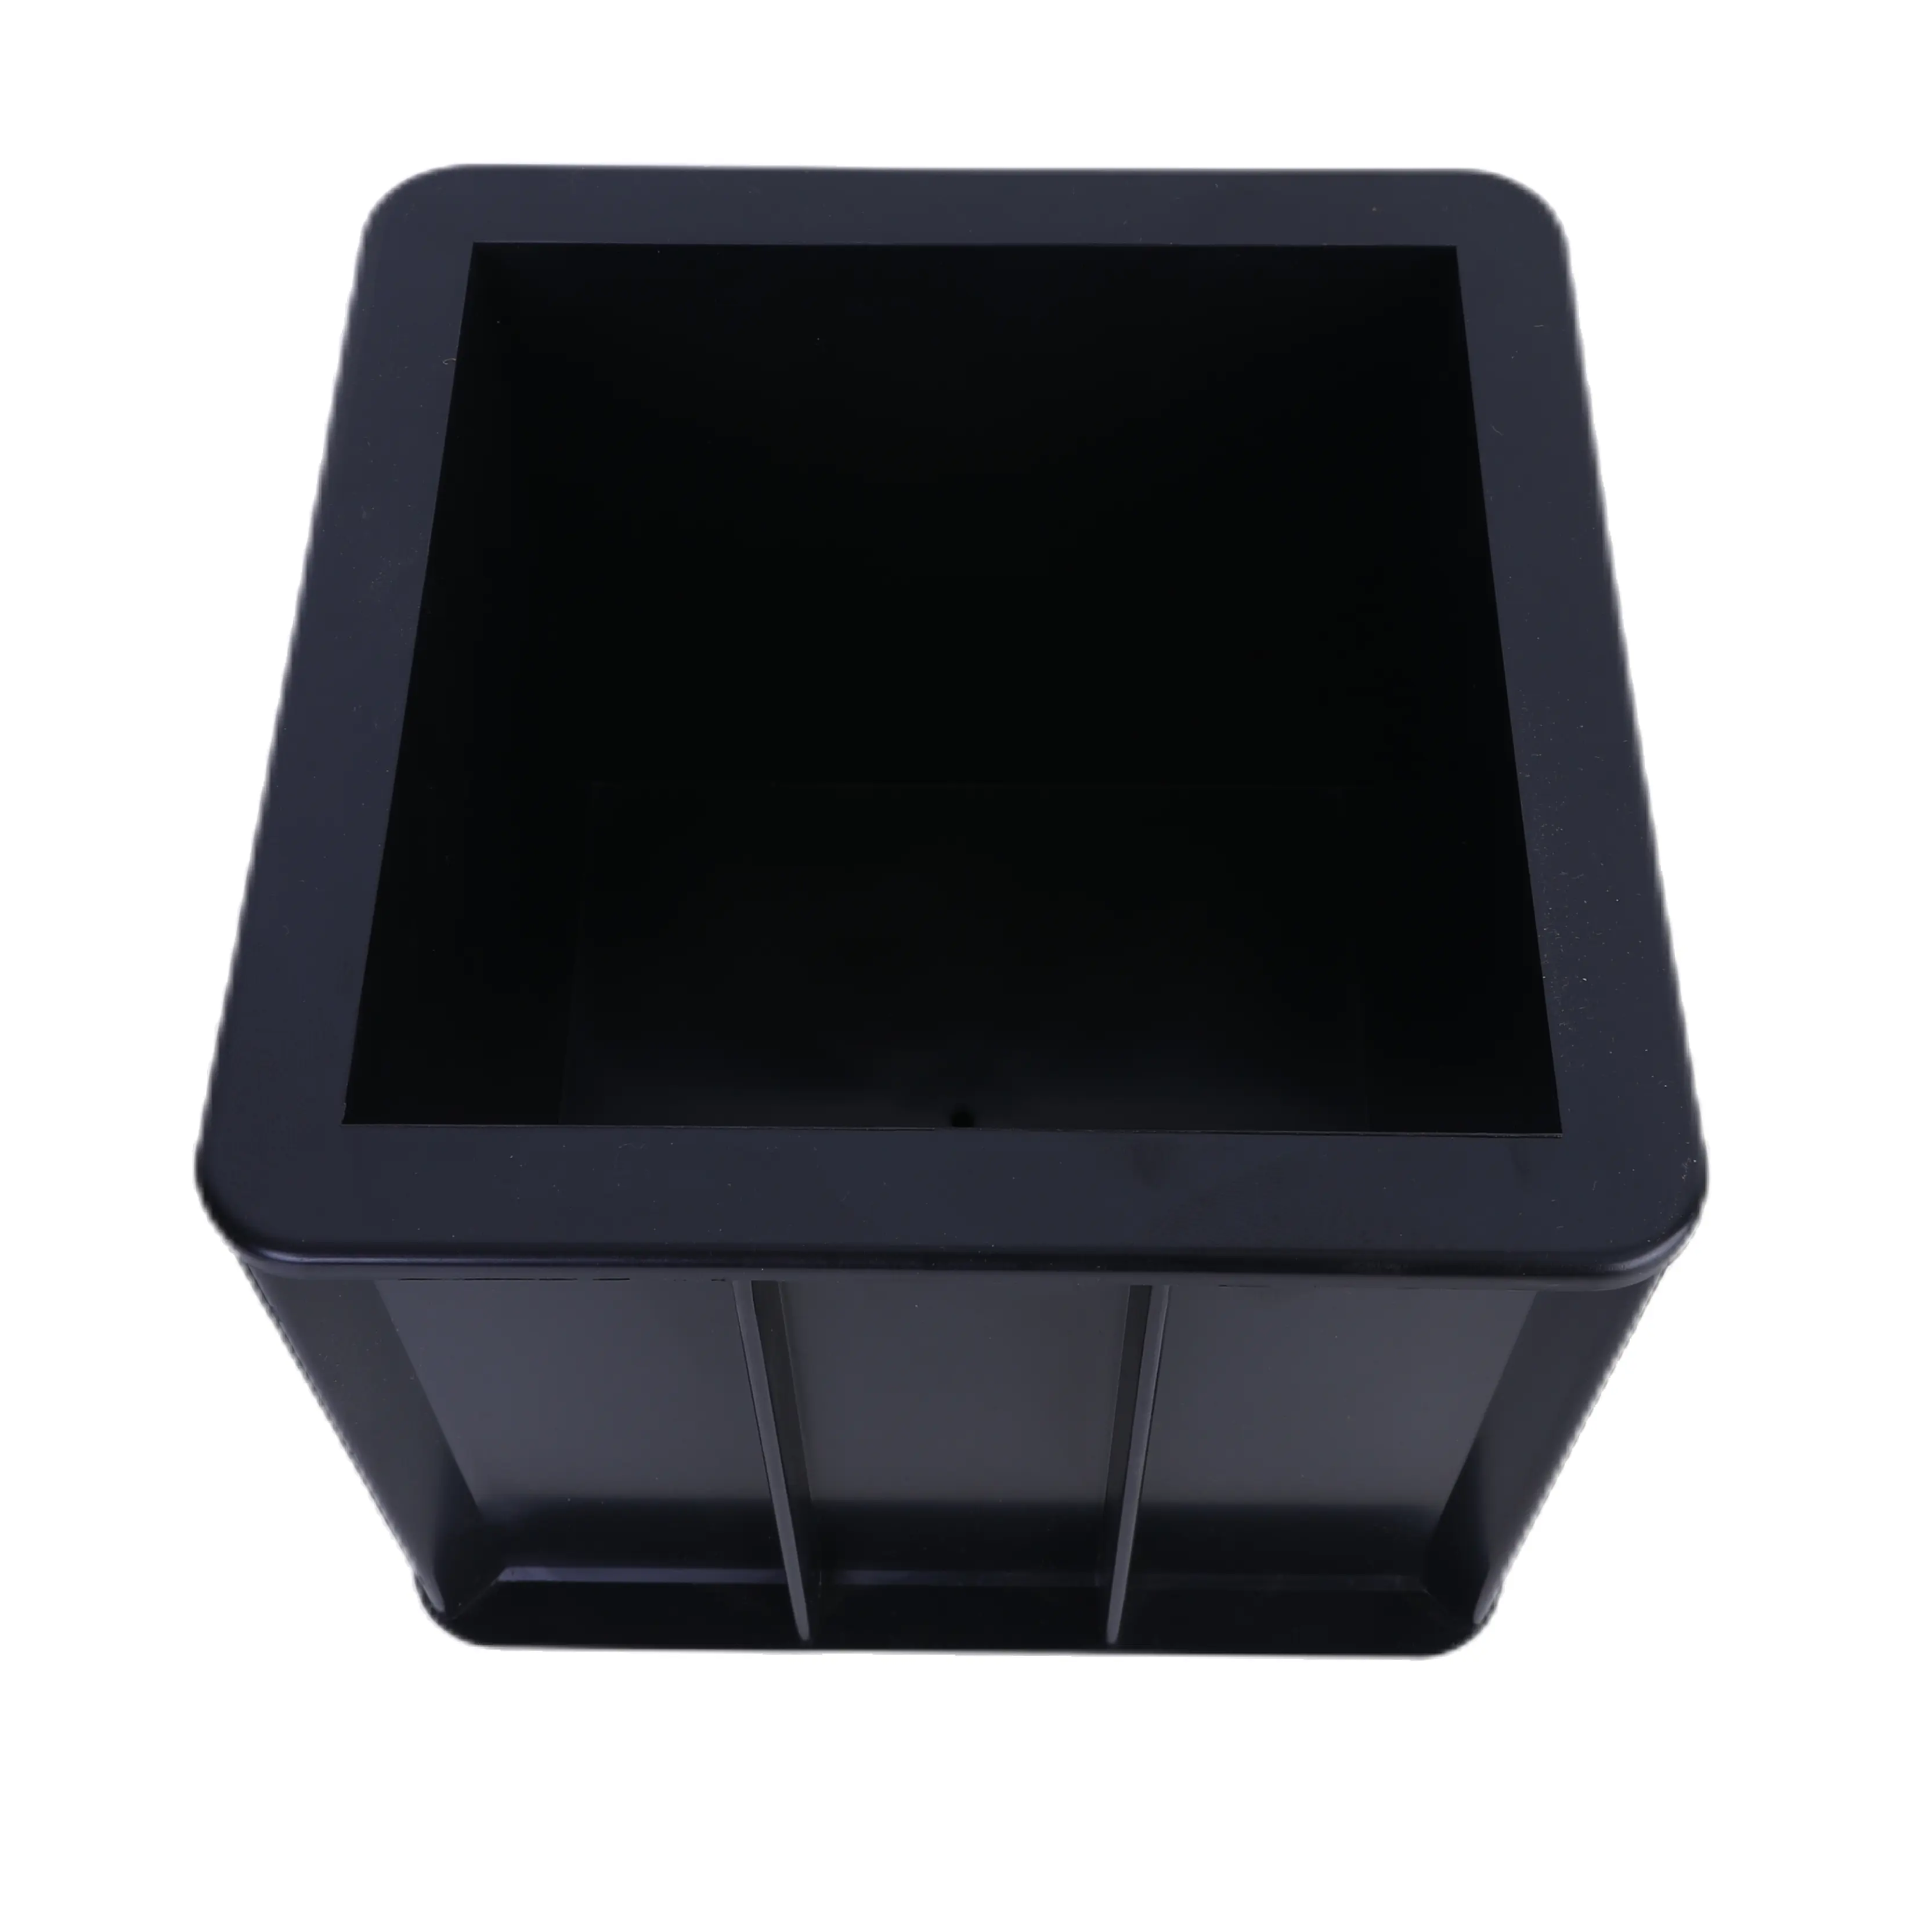 150mm Concrete Mold Black Color Plastics Cube Test Casting Moulds